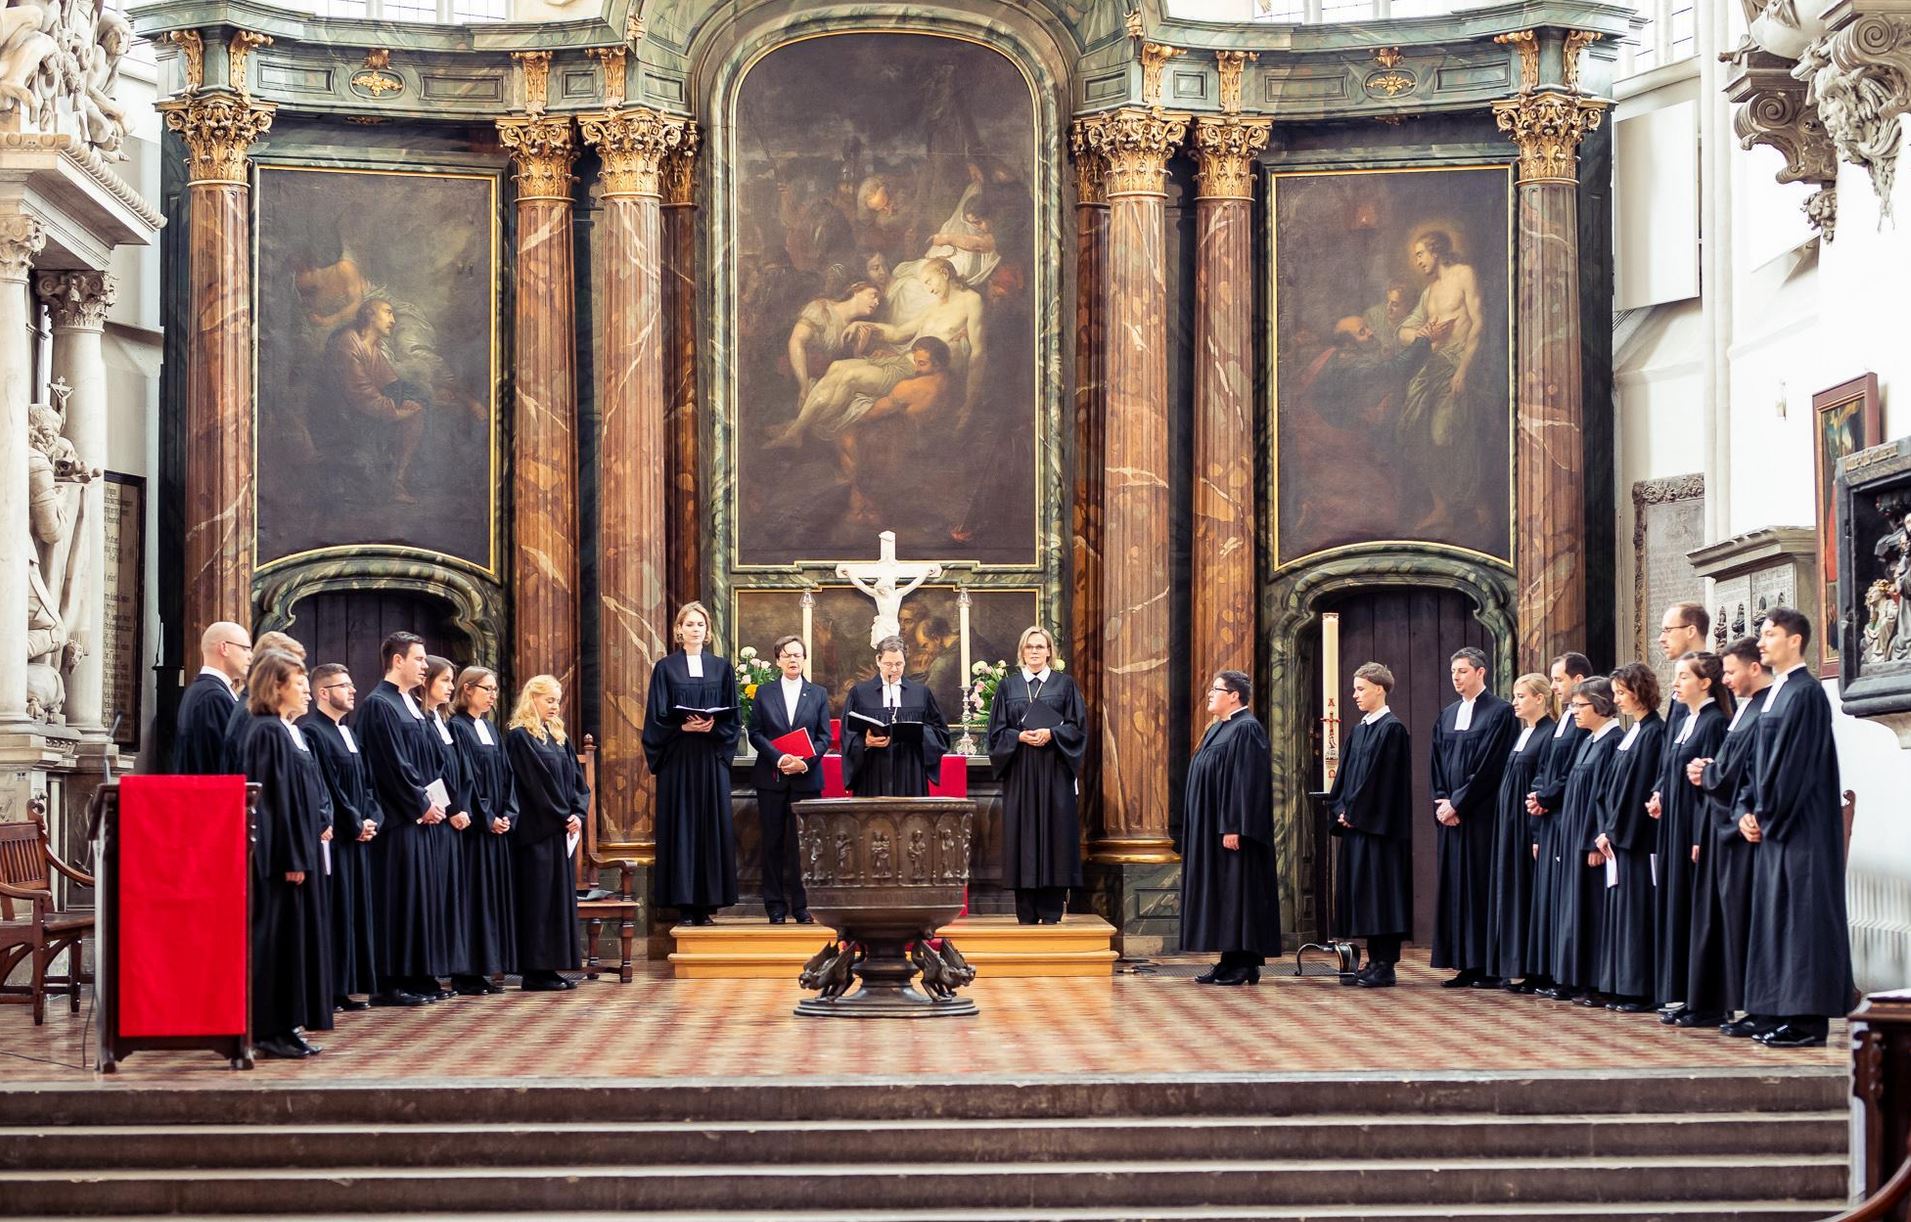 Ordinationsgottesdienst 2019, zu sehen ist der Altar der St. Marienkirche mit den neuen Pfarrerinnen im Talar Foto: Matthias Kauffmann